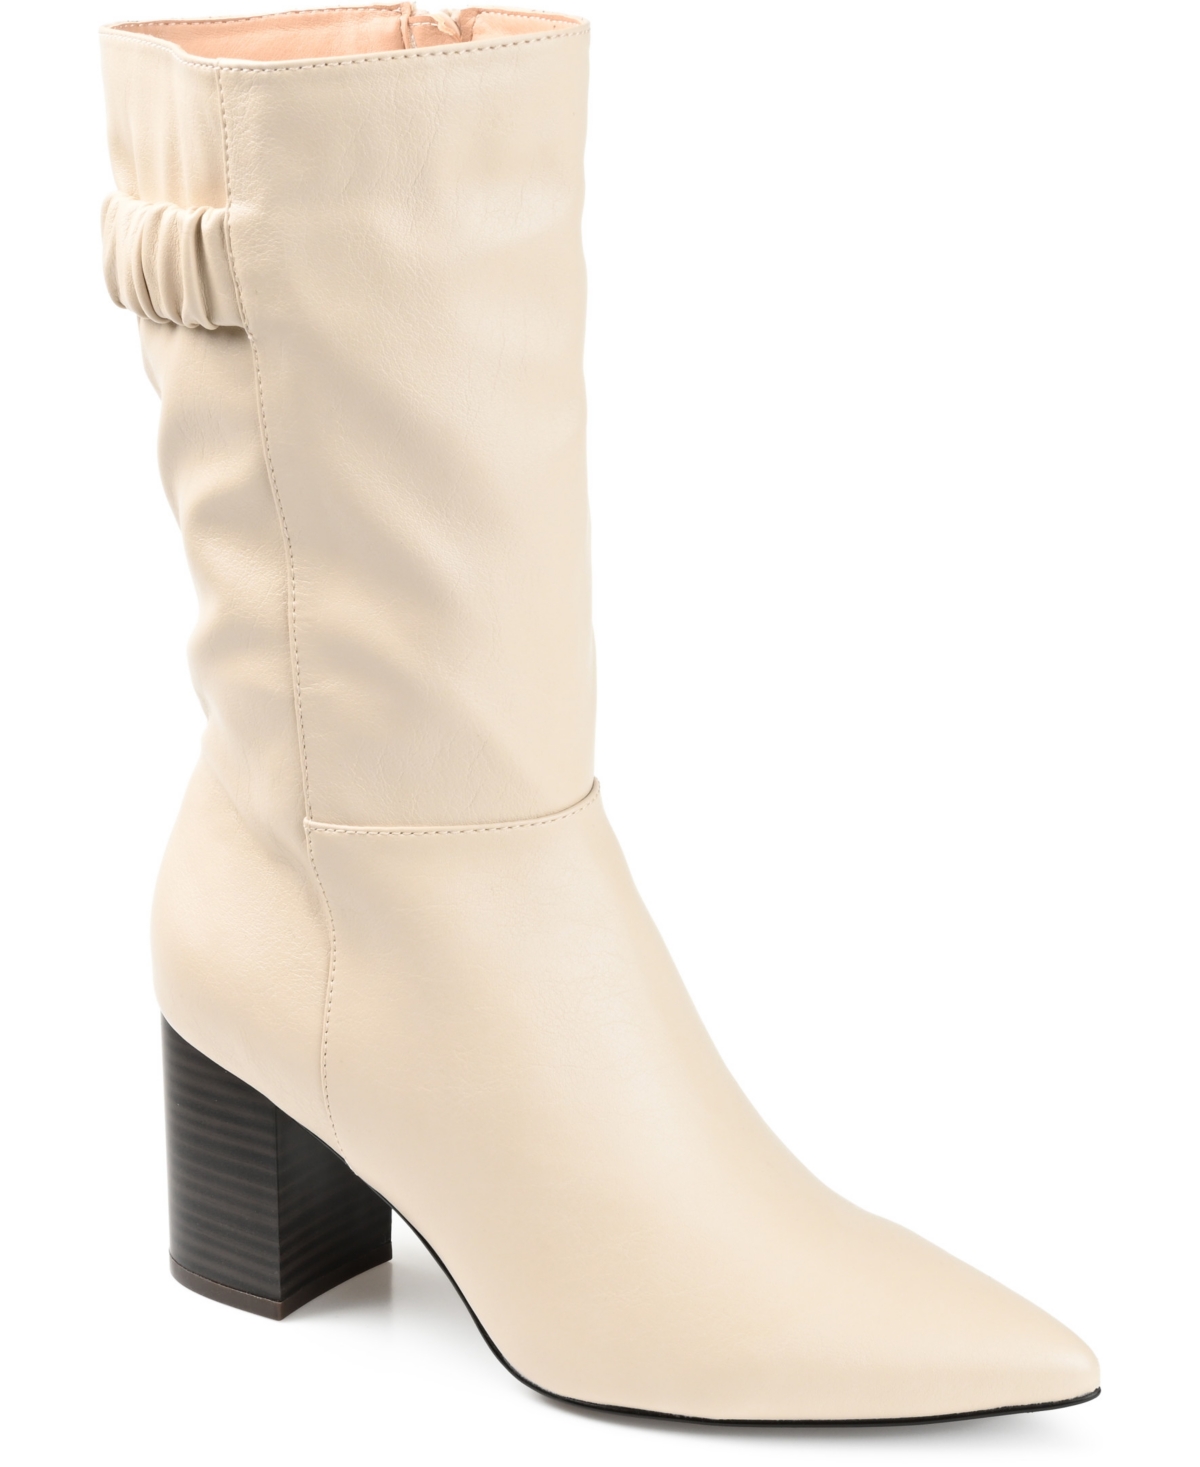 Women's Wilo Block Heel Boots - Tan